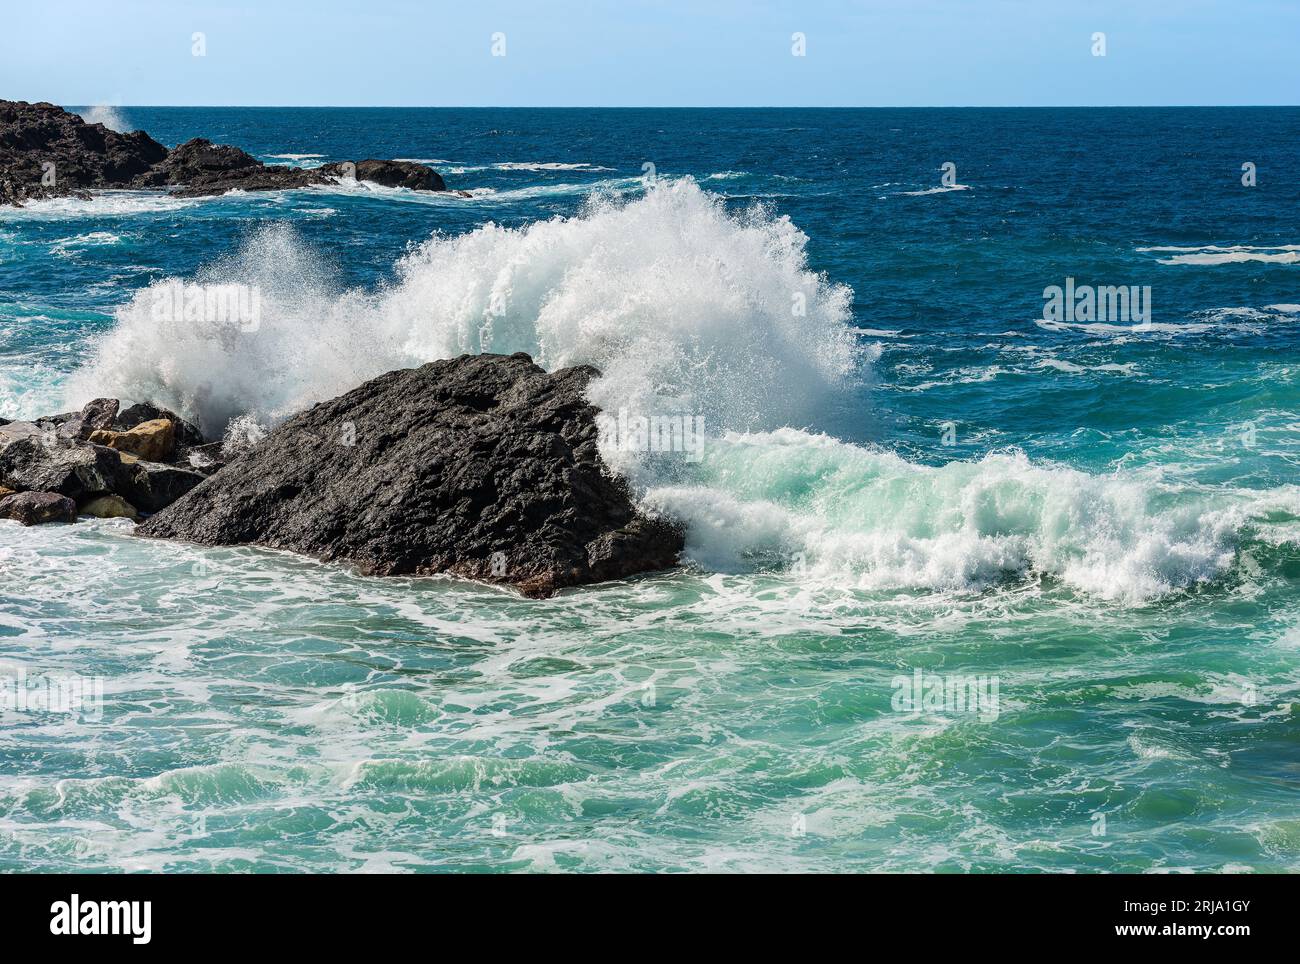 Grandi onde bianche del mare si infrangono sulle rocce. Mar Mediterraneo vicino al piccolo villaggio di Framura. La Spezia, Liguria, Italia, Europa. Foto Stock